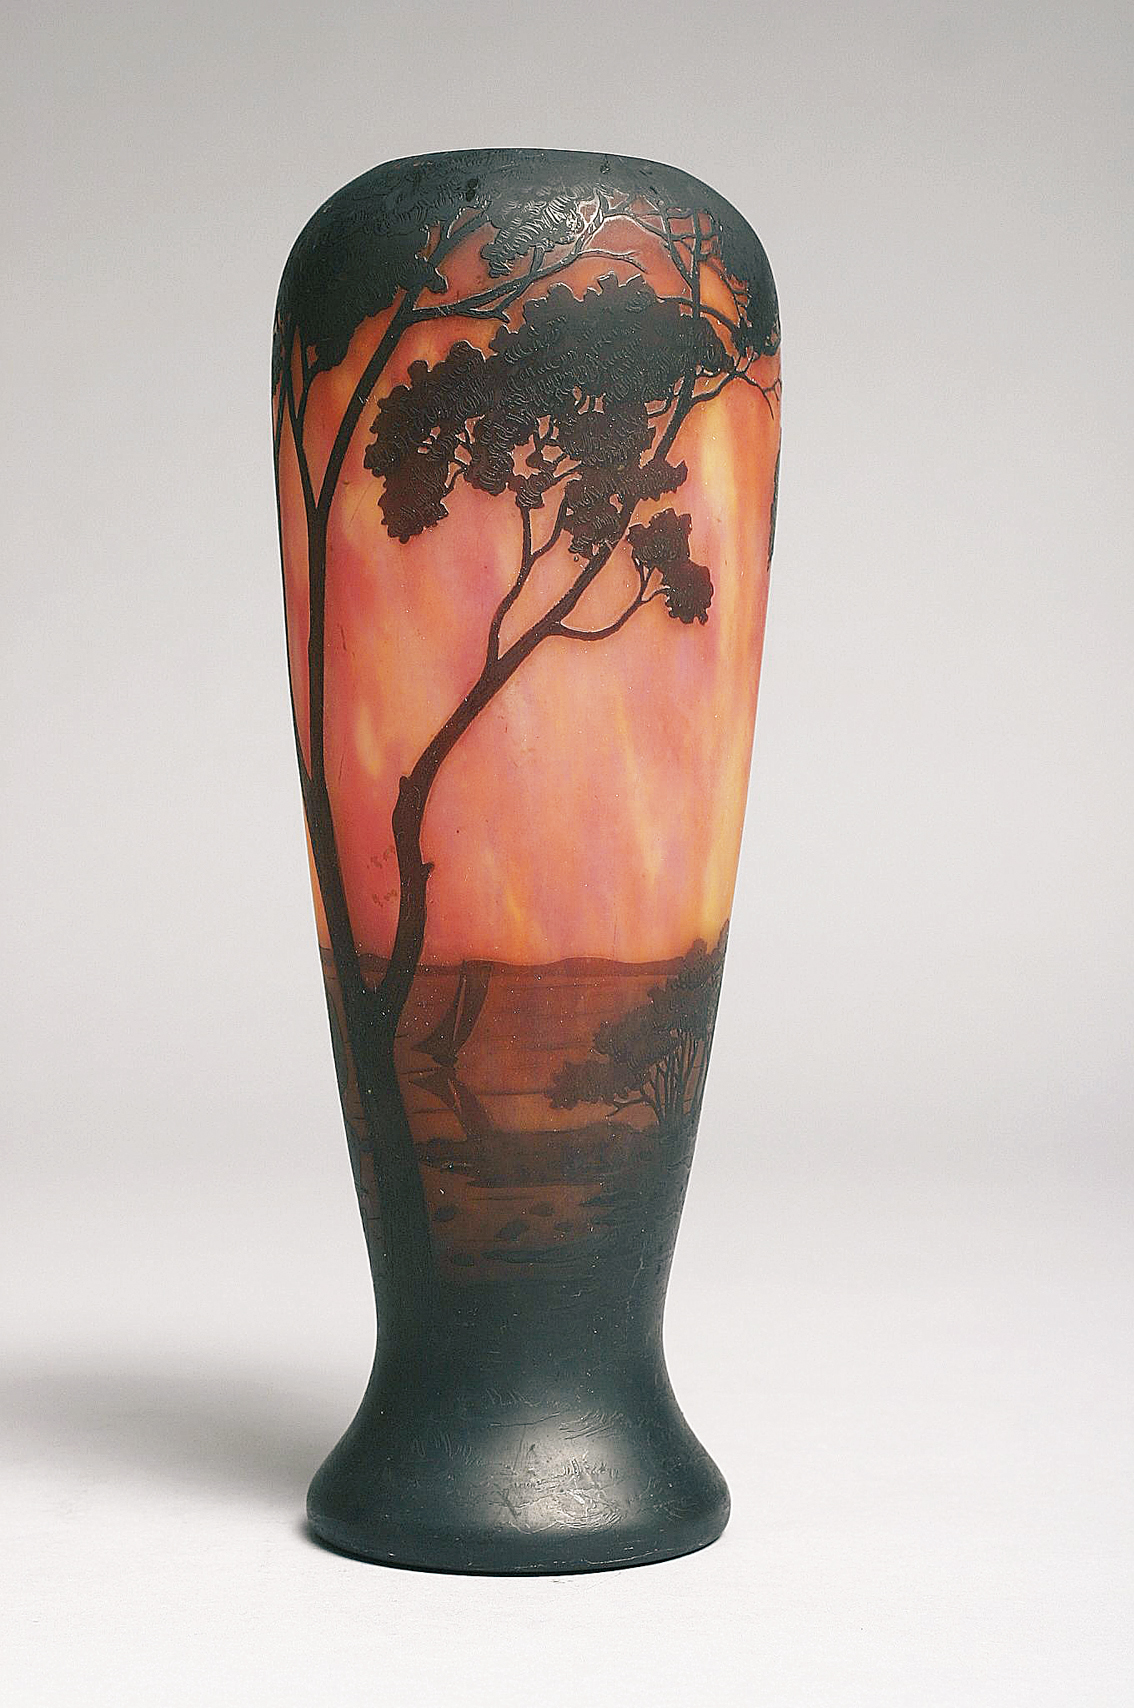 Art-Nouveau vase with sea landscape